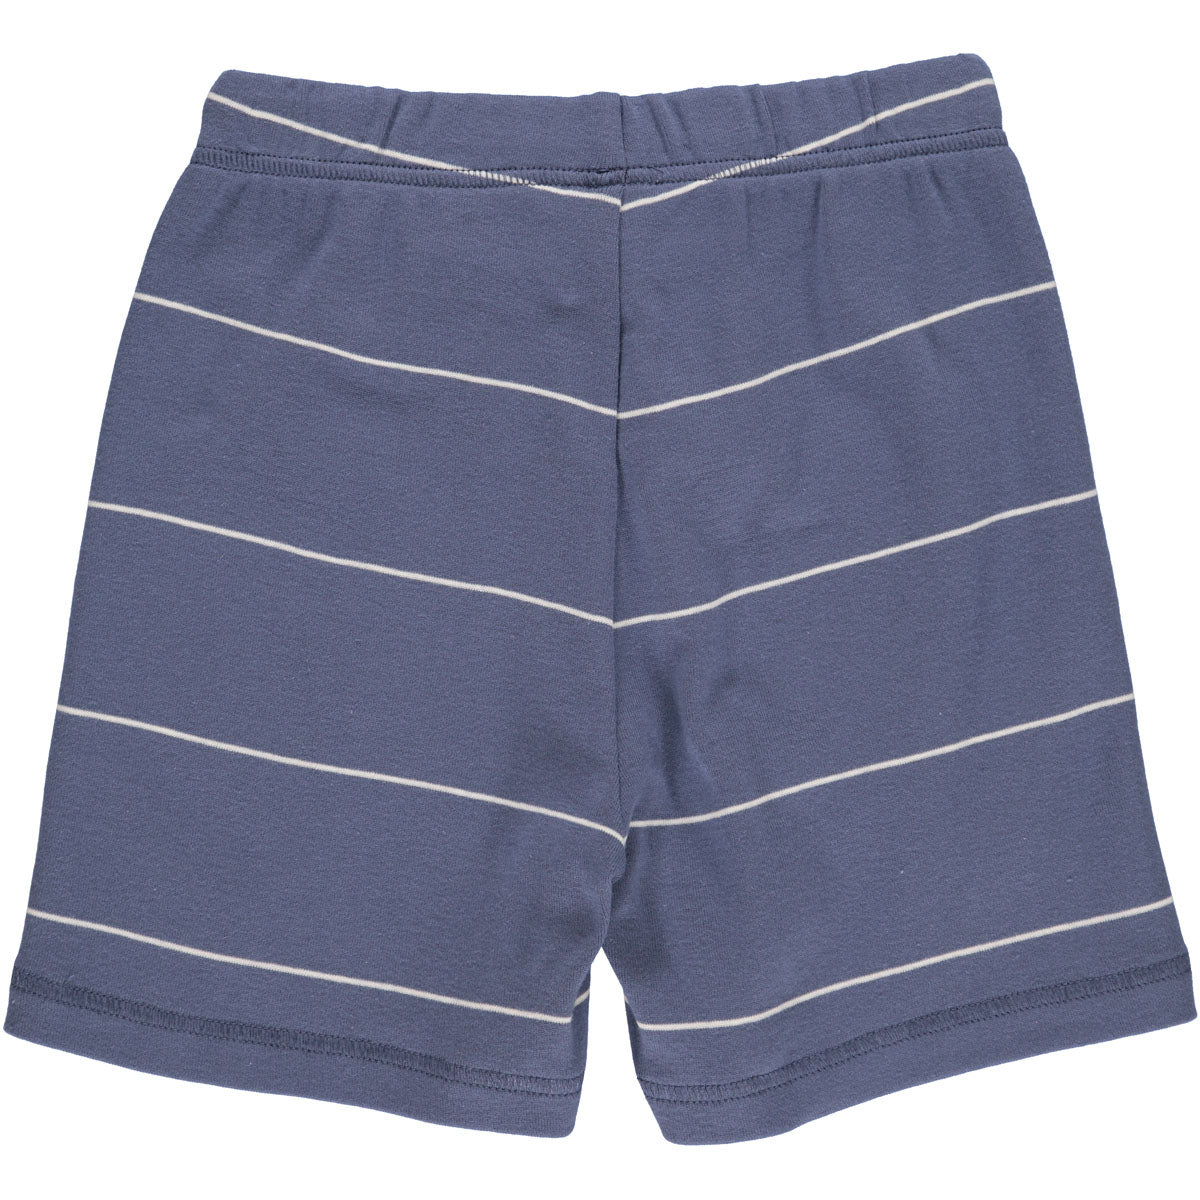 Stripe shorts - Indigo